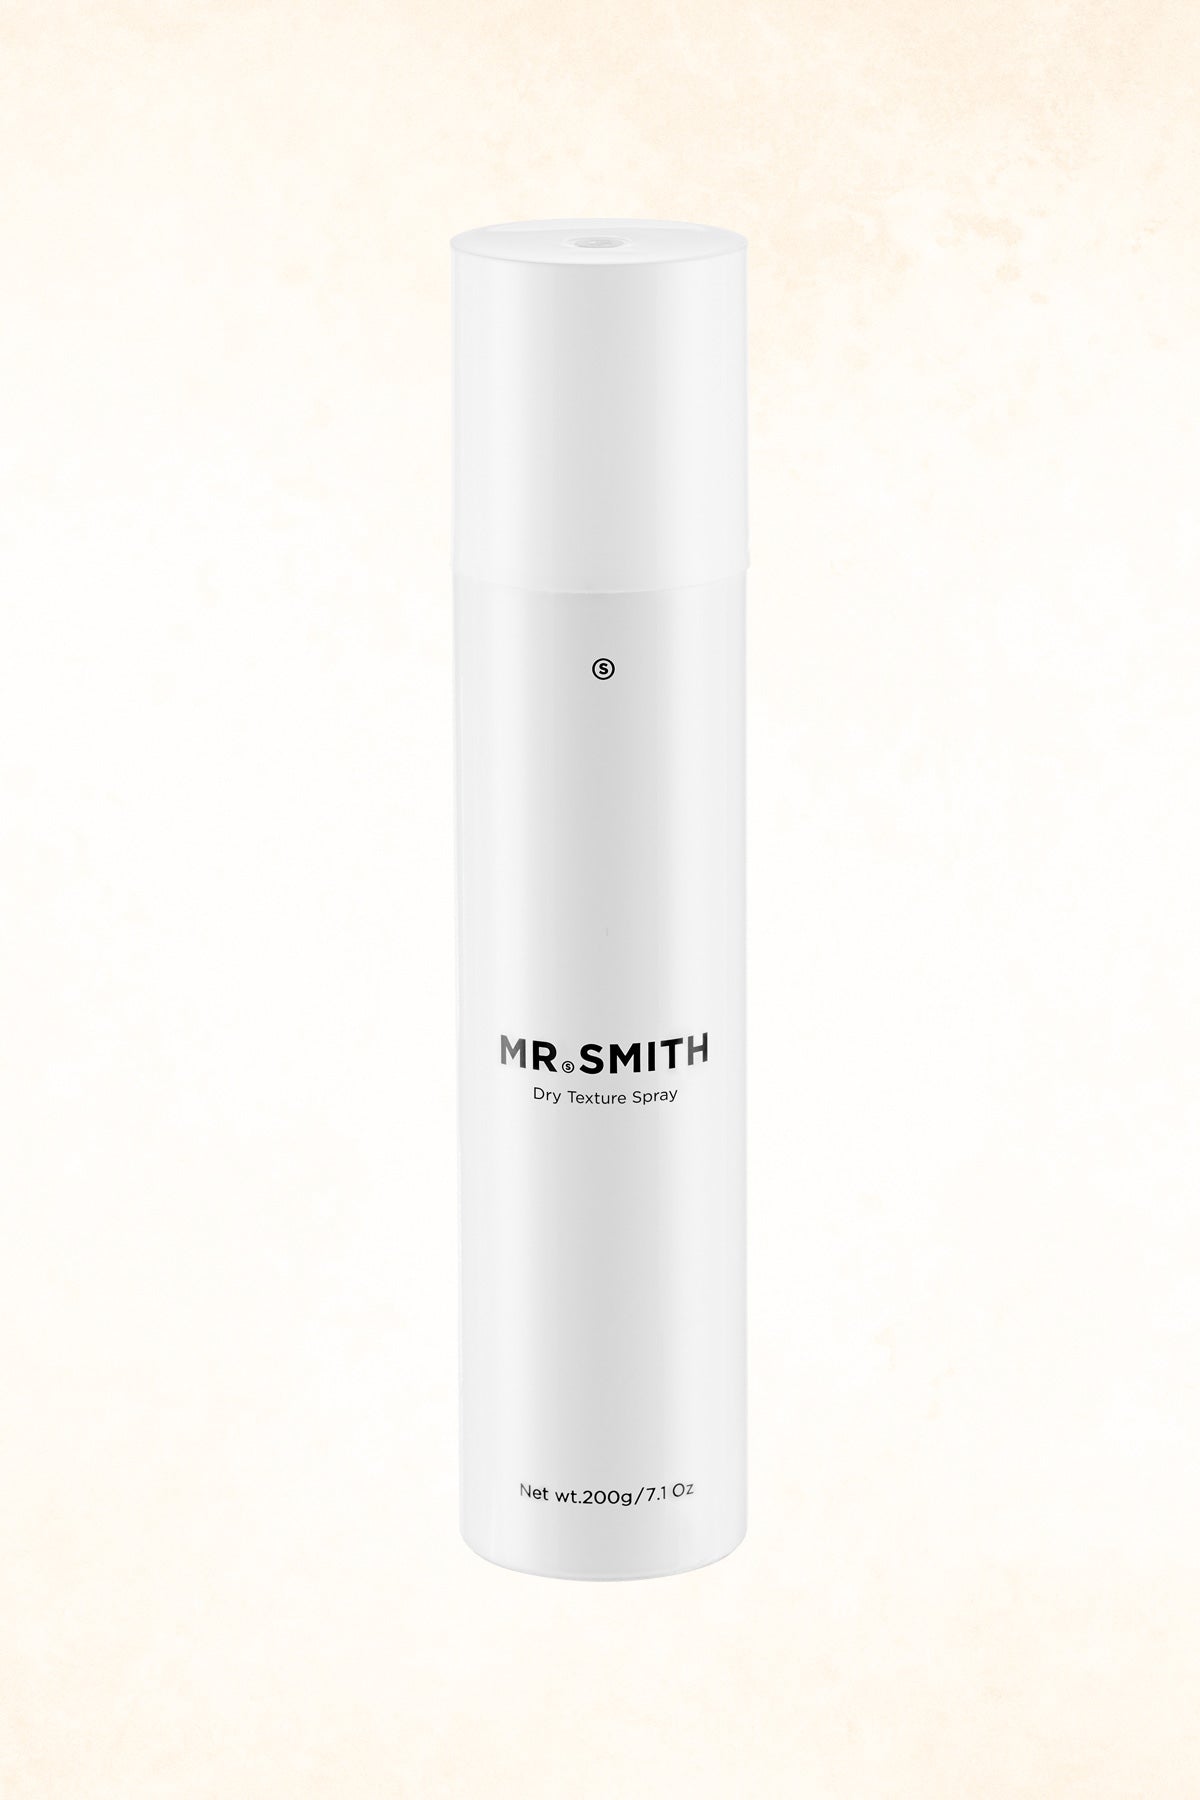 Mr Smith – Dry Texture Spray – 200 g